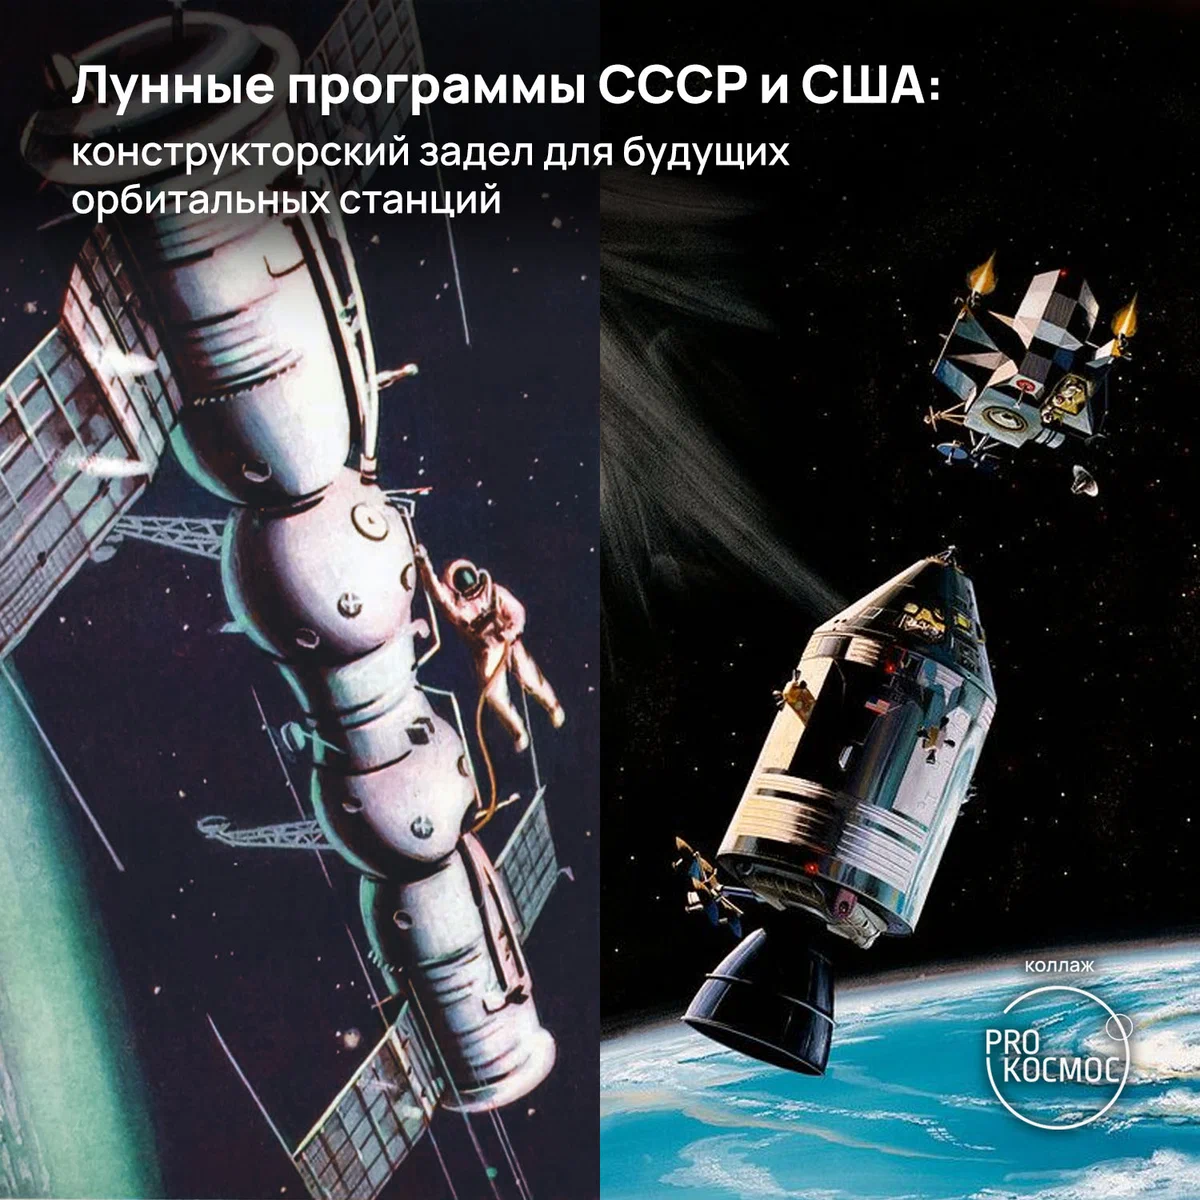 К 165-летию Циолковского: как люди придумали орбитальные станции за 100 лет до их появления height=1200px width=1200px